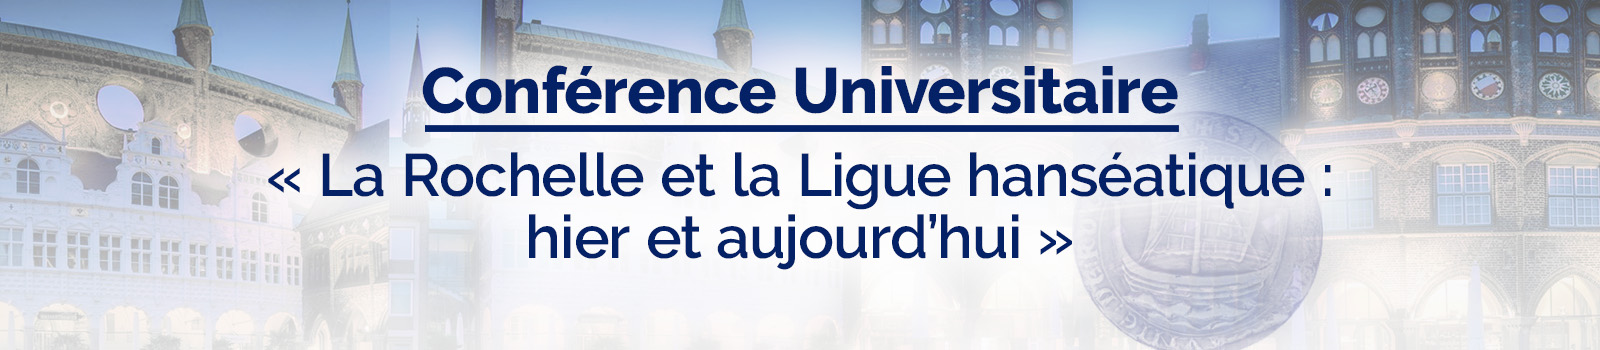 Conférence Universitaire : « La Rochelle et la Ligue hanséatique : hier et aujourd’hui »